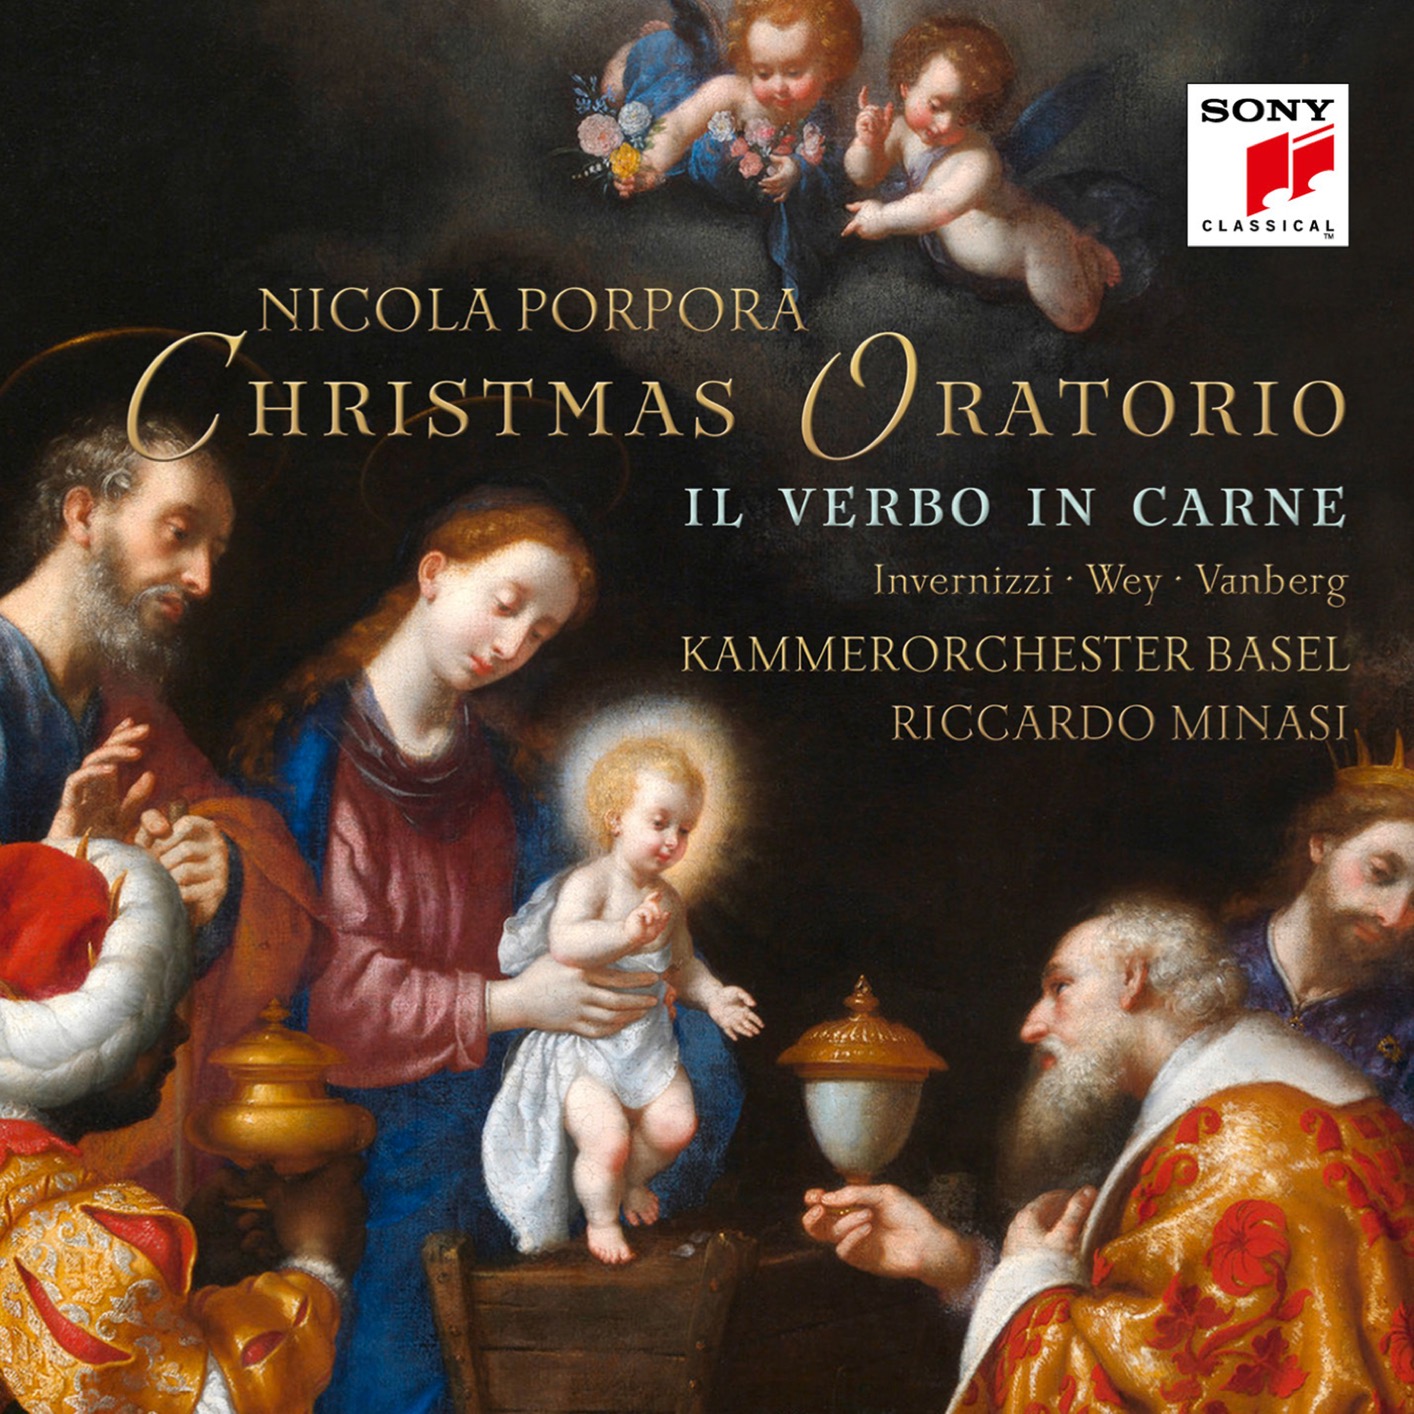 Kammerorchester Basel & Riccardo Minasi – Porpora: Il verbo in carne (Christmas Oratorio) (2018) [FLAC 24bit/48kHz]